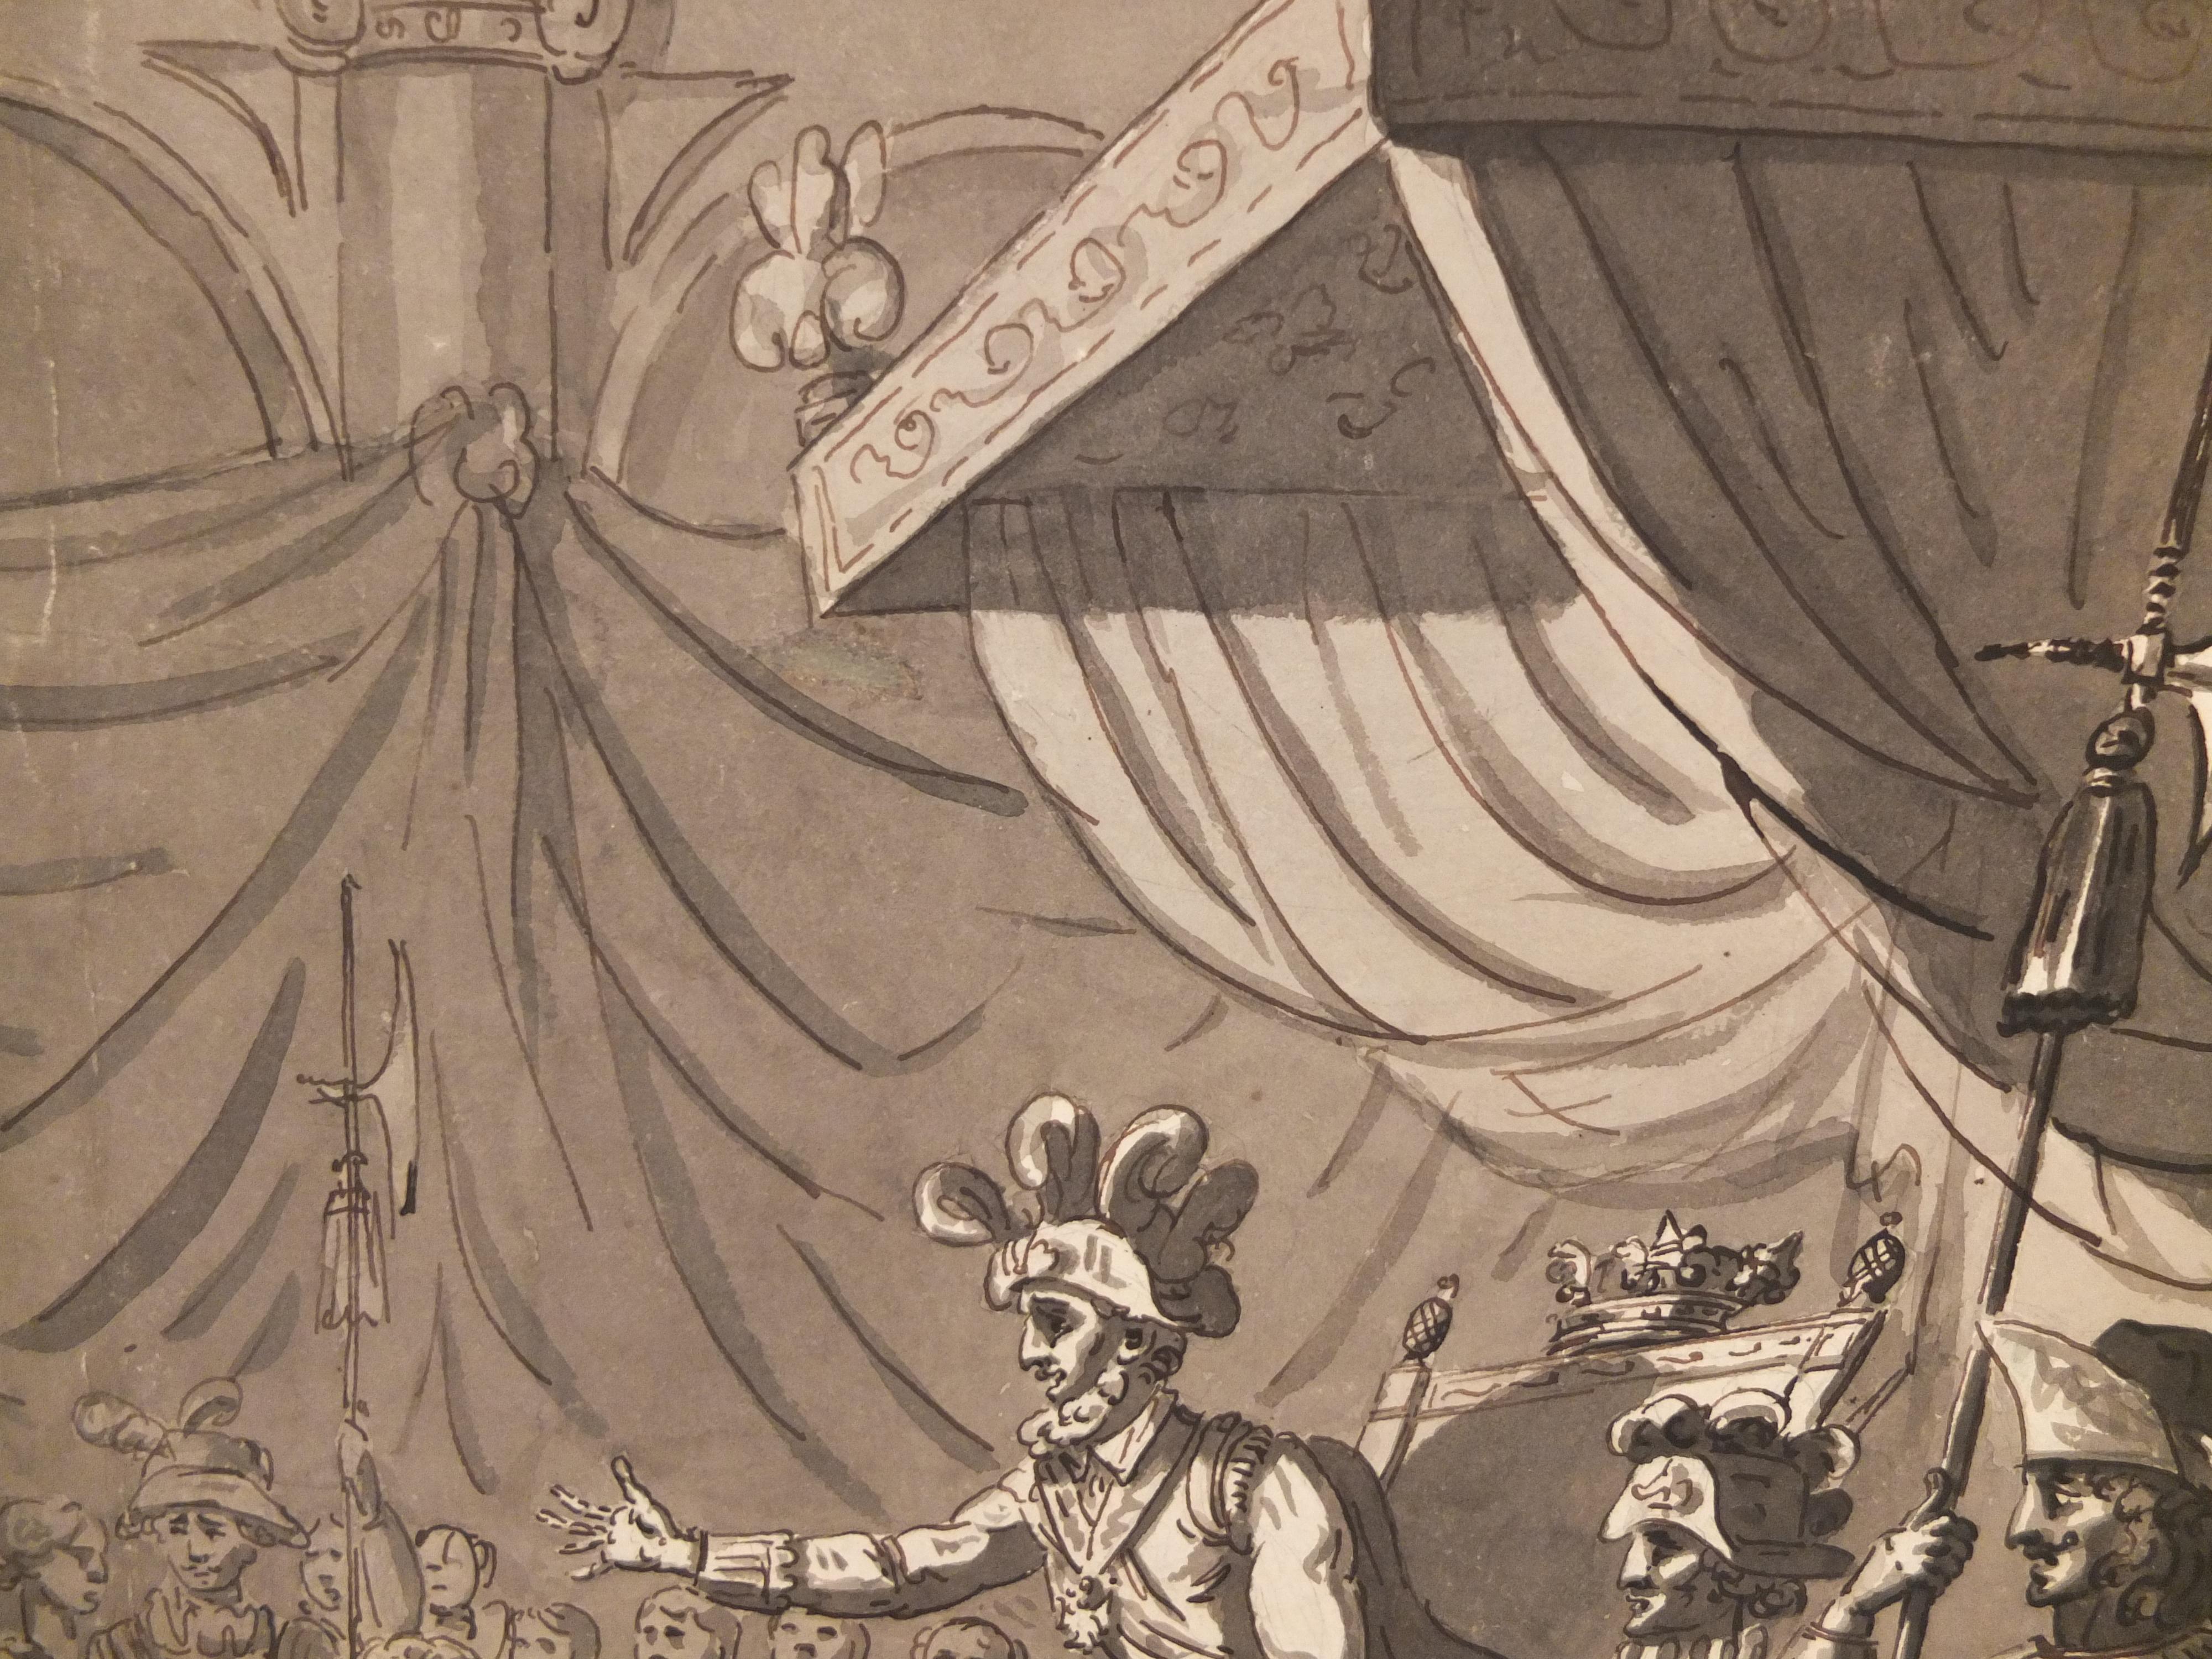 Artista Desconocido, Escuela Francesa Siglo XVIII, ¿Círculo de Mazo? Escena tomada del Decamerone.
Dibujo del Viejo Maestro